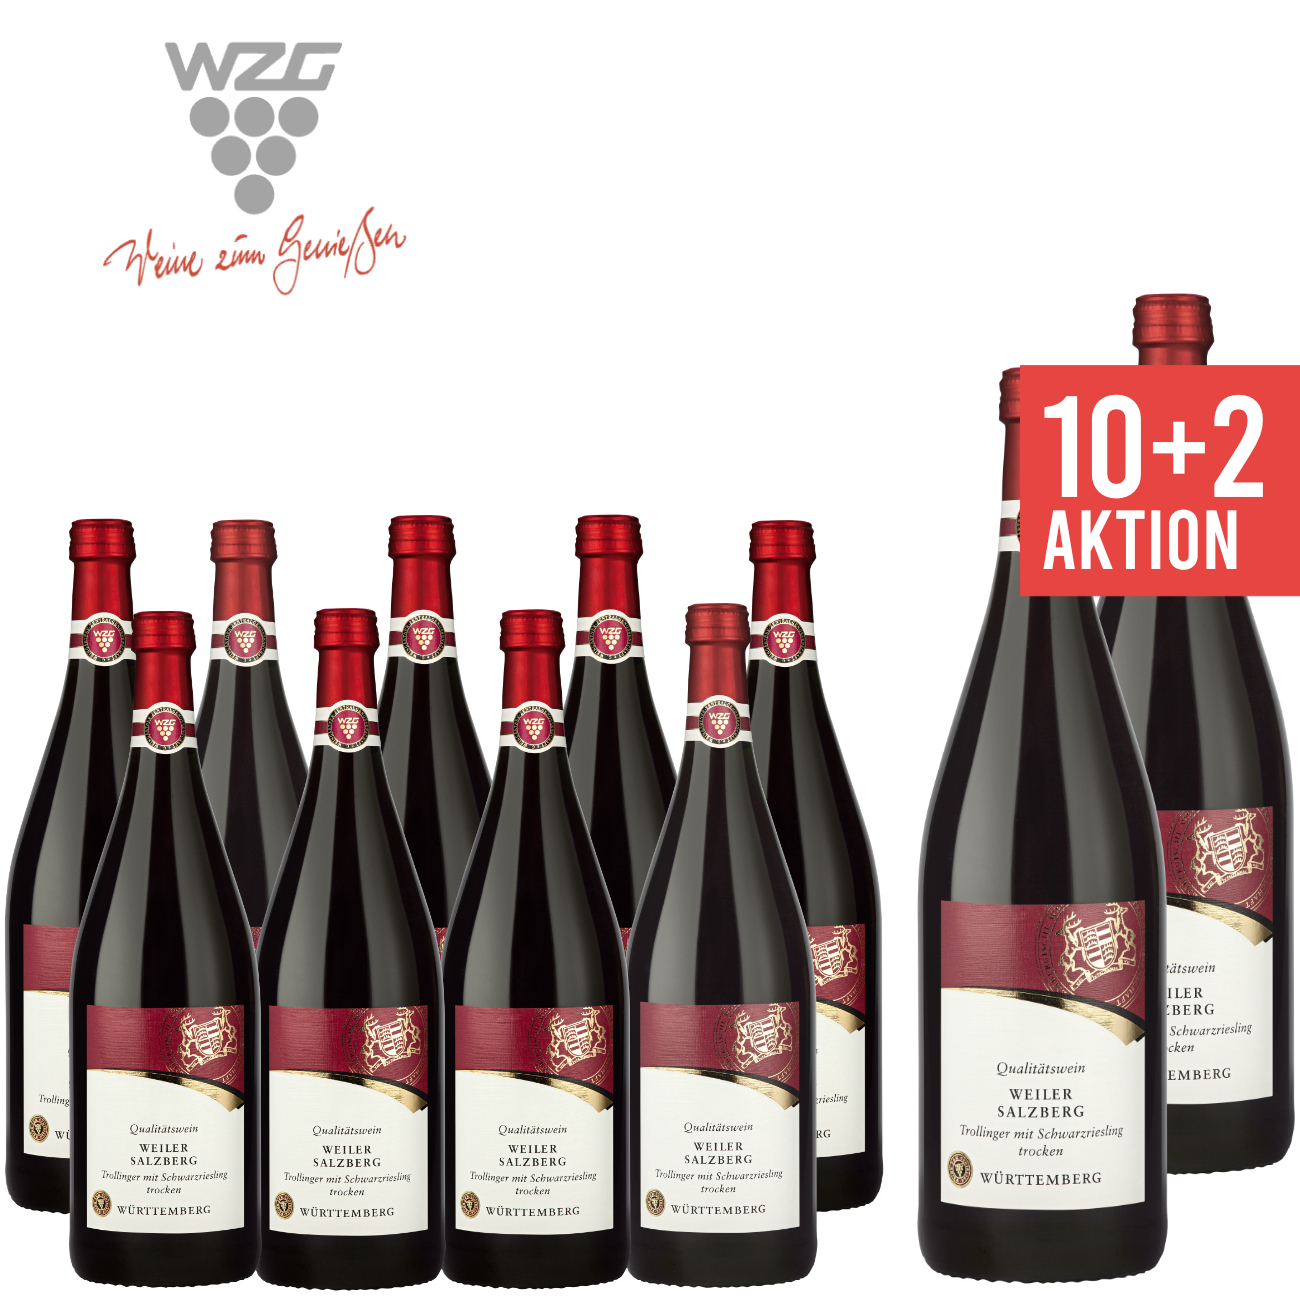 WZG Möglingen 10+2 Weiler Salzberg Trollinger mit Schwarzriesling trocken Qualitätswein 1,0 L - Württemberg, Rotwein